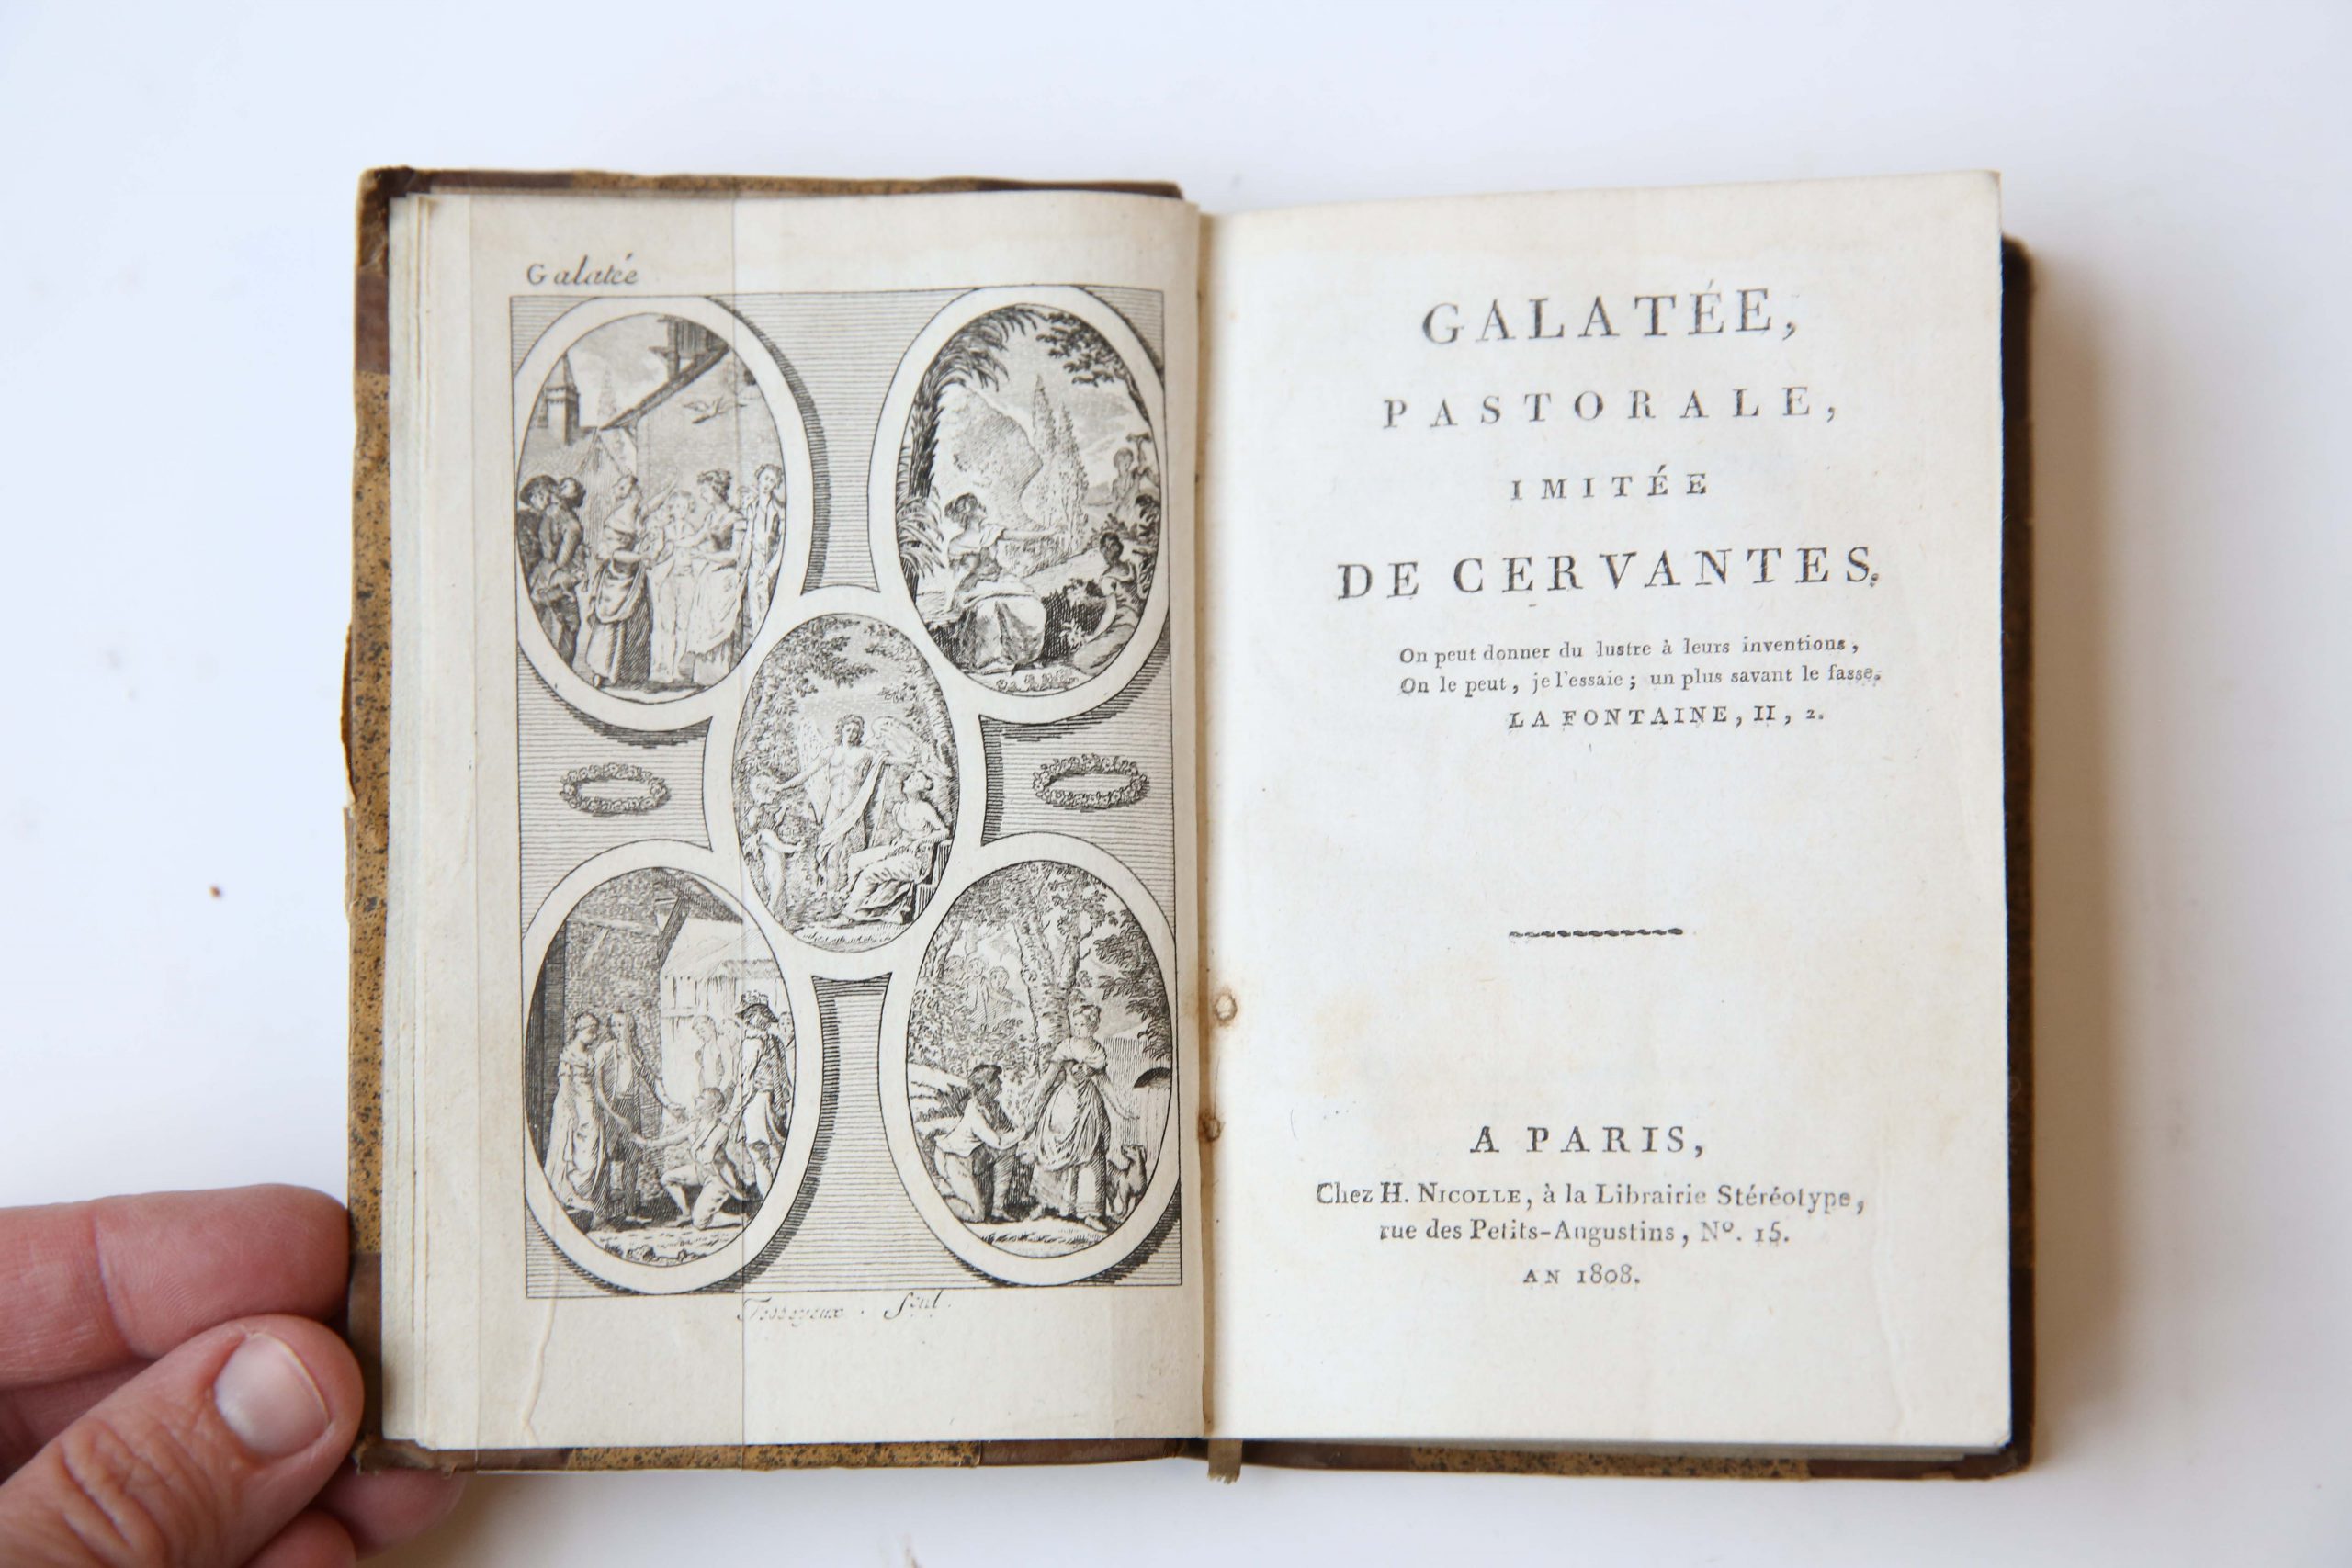 Galatée, Pastorale, imitée de Cervanes, a Paris, Chez. H. Nicolle, 1808, 179 pp. With frontispiece of Galatée.